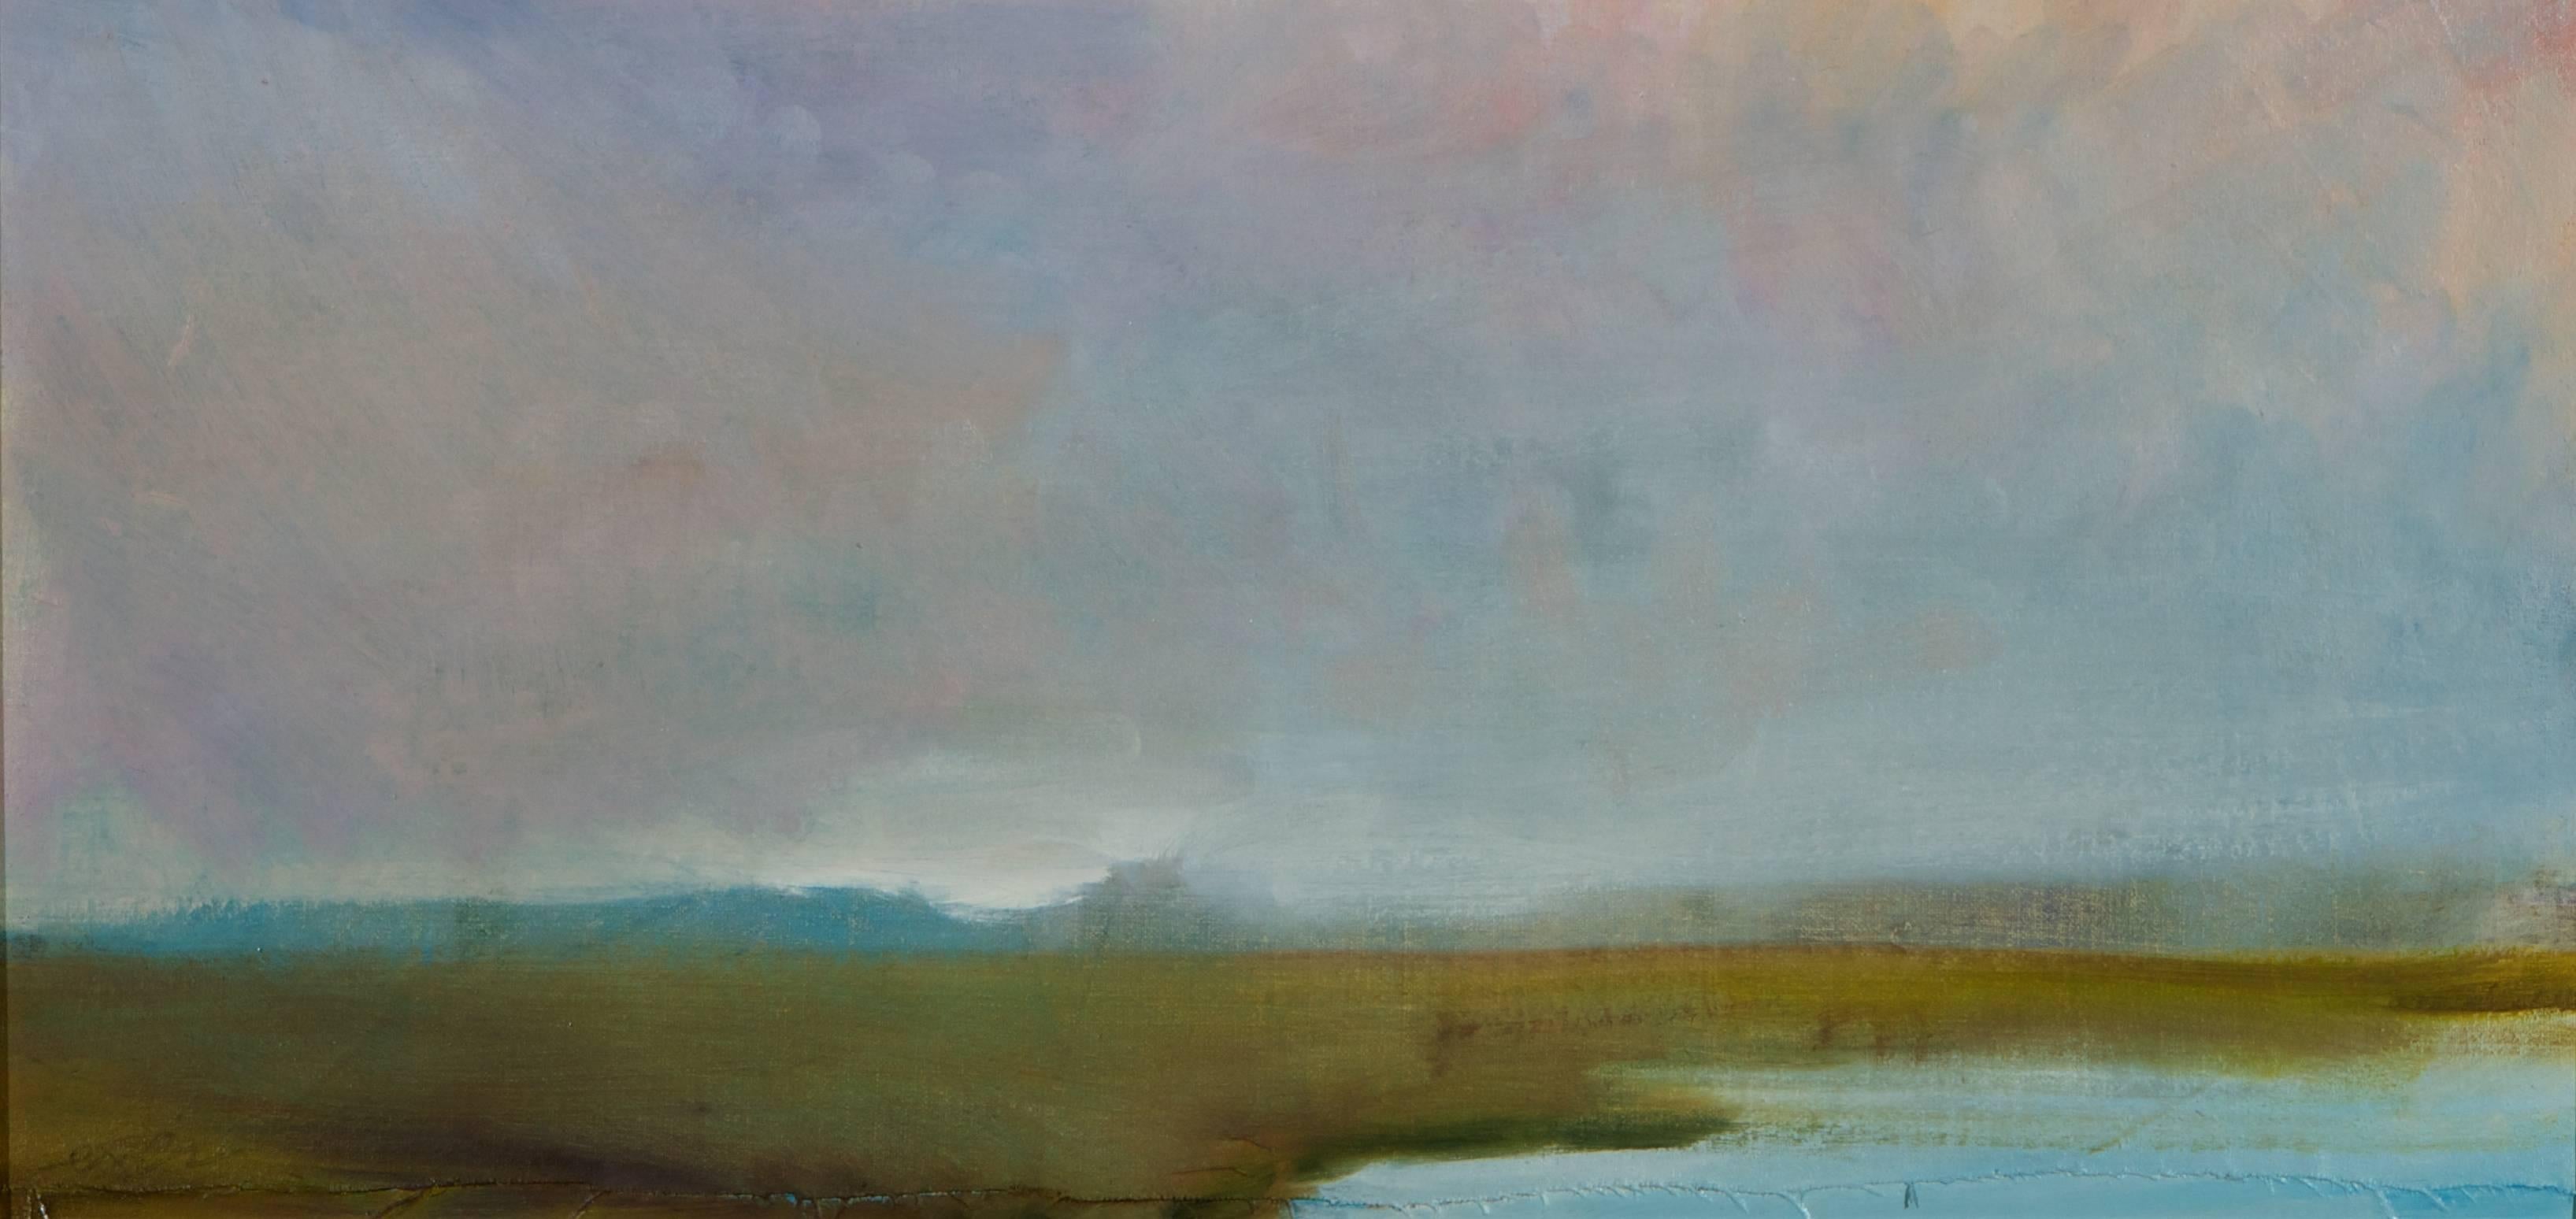 Robert Reynolds Landscape Painting - "Hilversum" - Lanscape Painting 